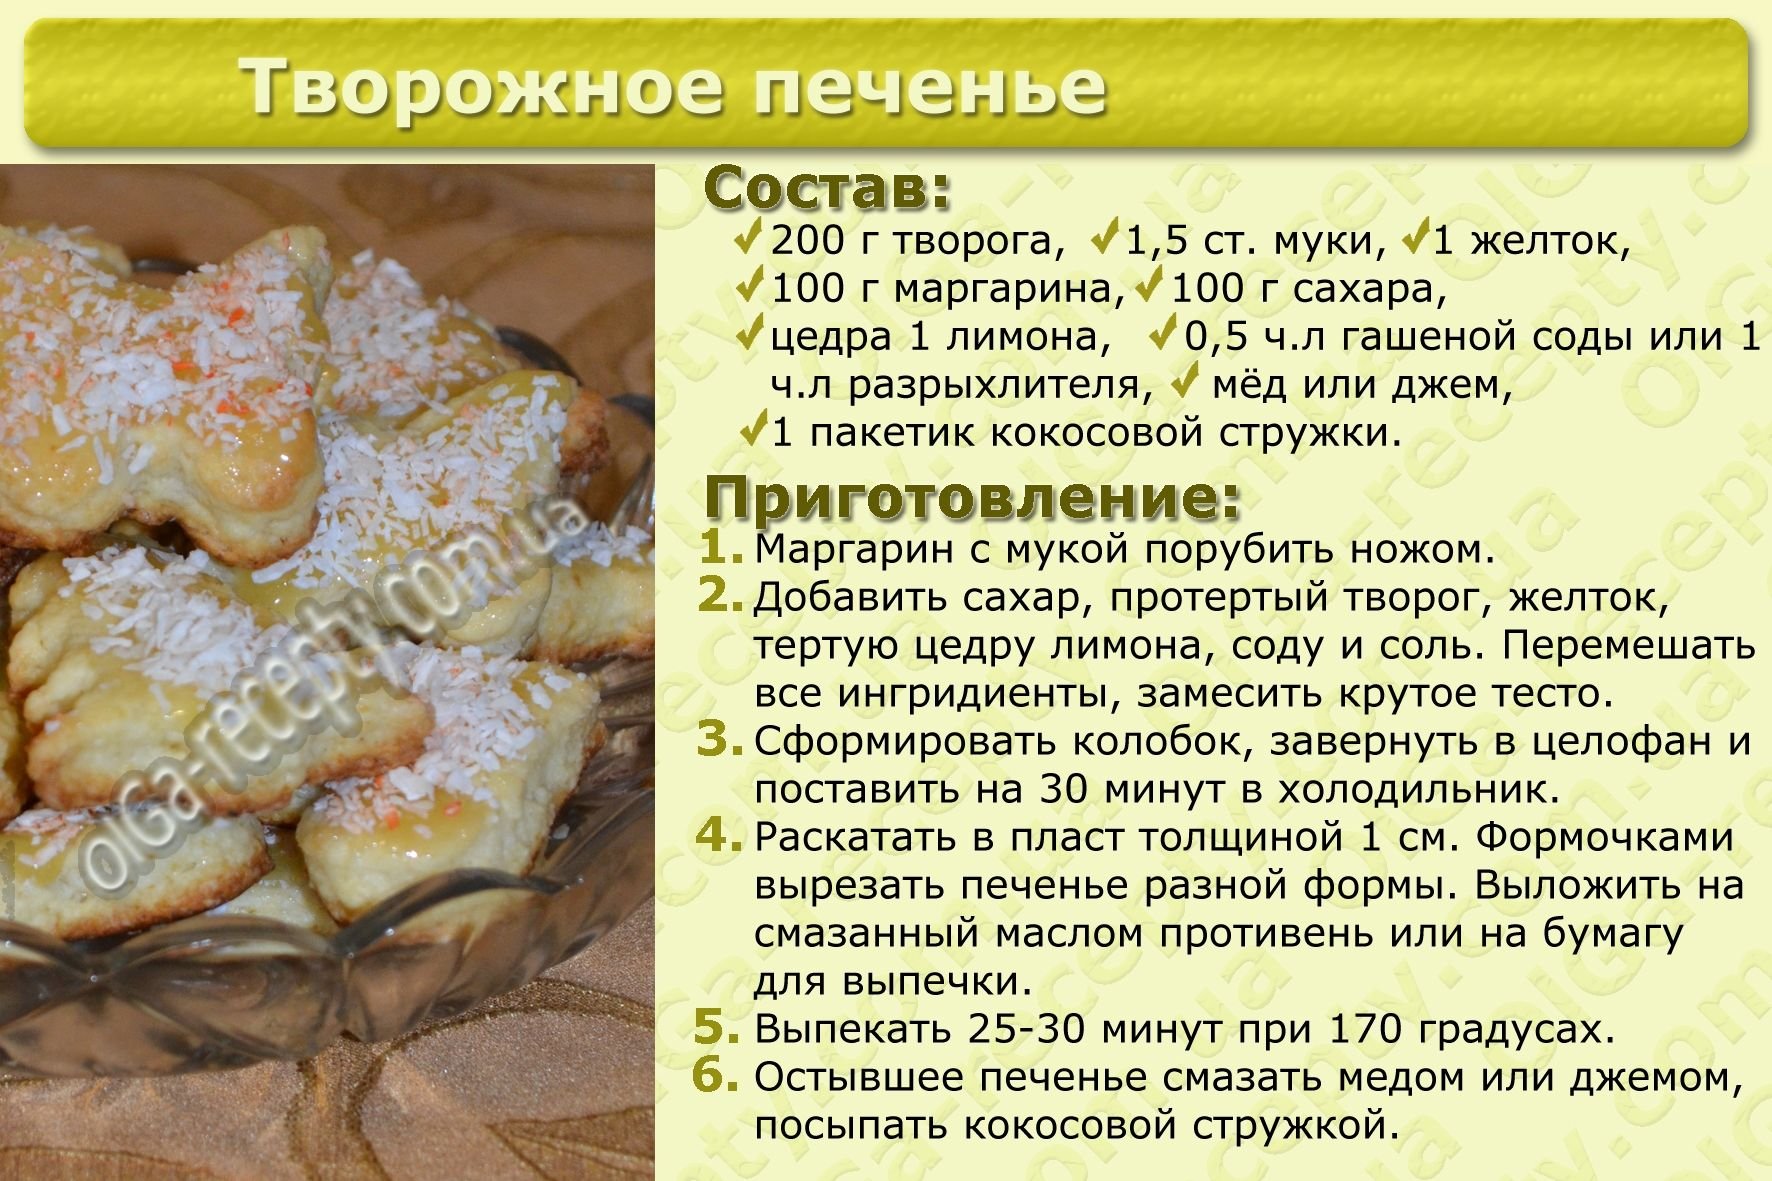 Рецепт песочного печенья в домашних условиях духовке. Рецепт печенья картинки. Рецепт печенья в духовке. Песочное тесто для печенья. Вкусное песочное тесто для печенья.